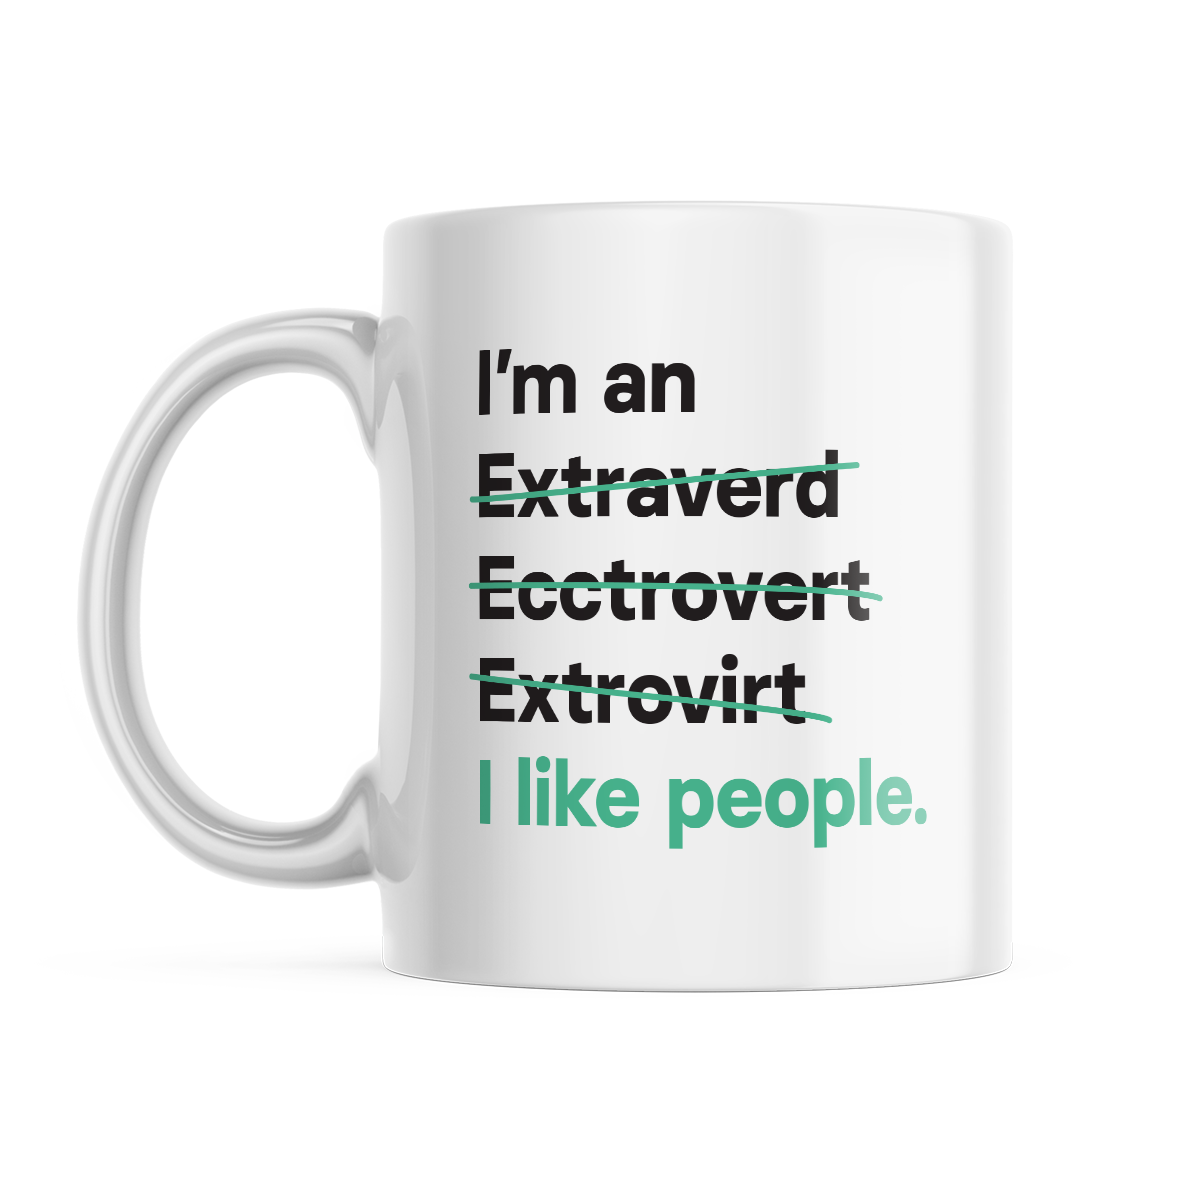 I'm an Extrovert